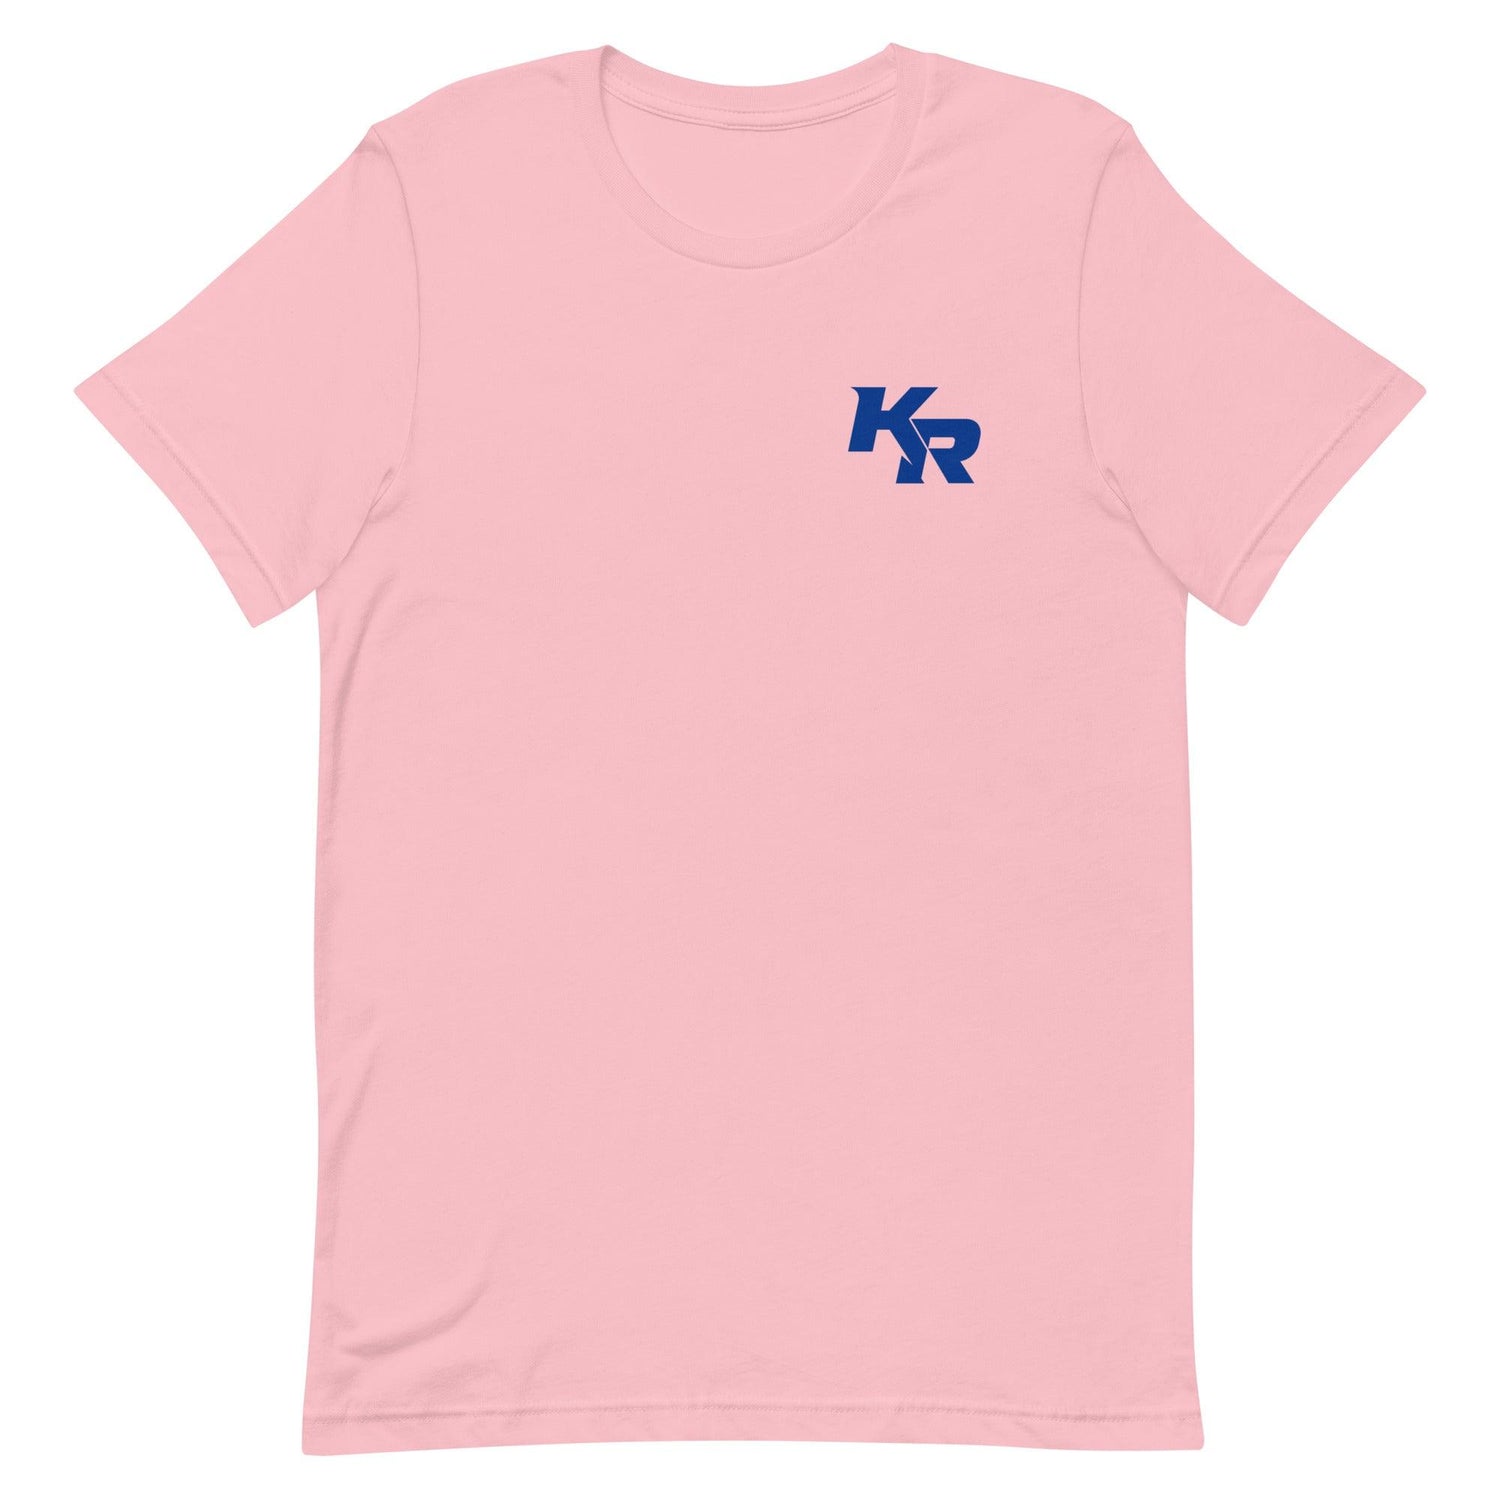 Kimari Robinson "Essential" t-shirt - Fan Arch